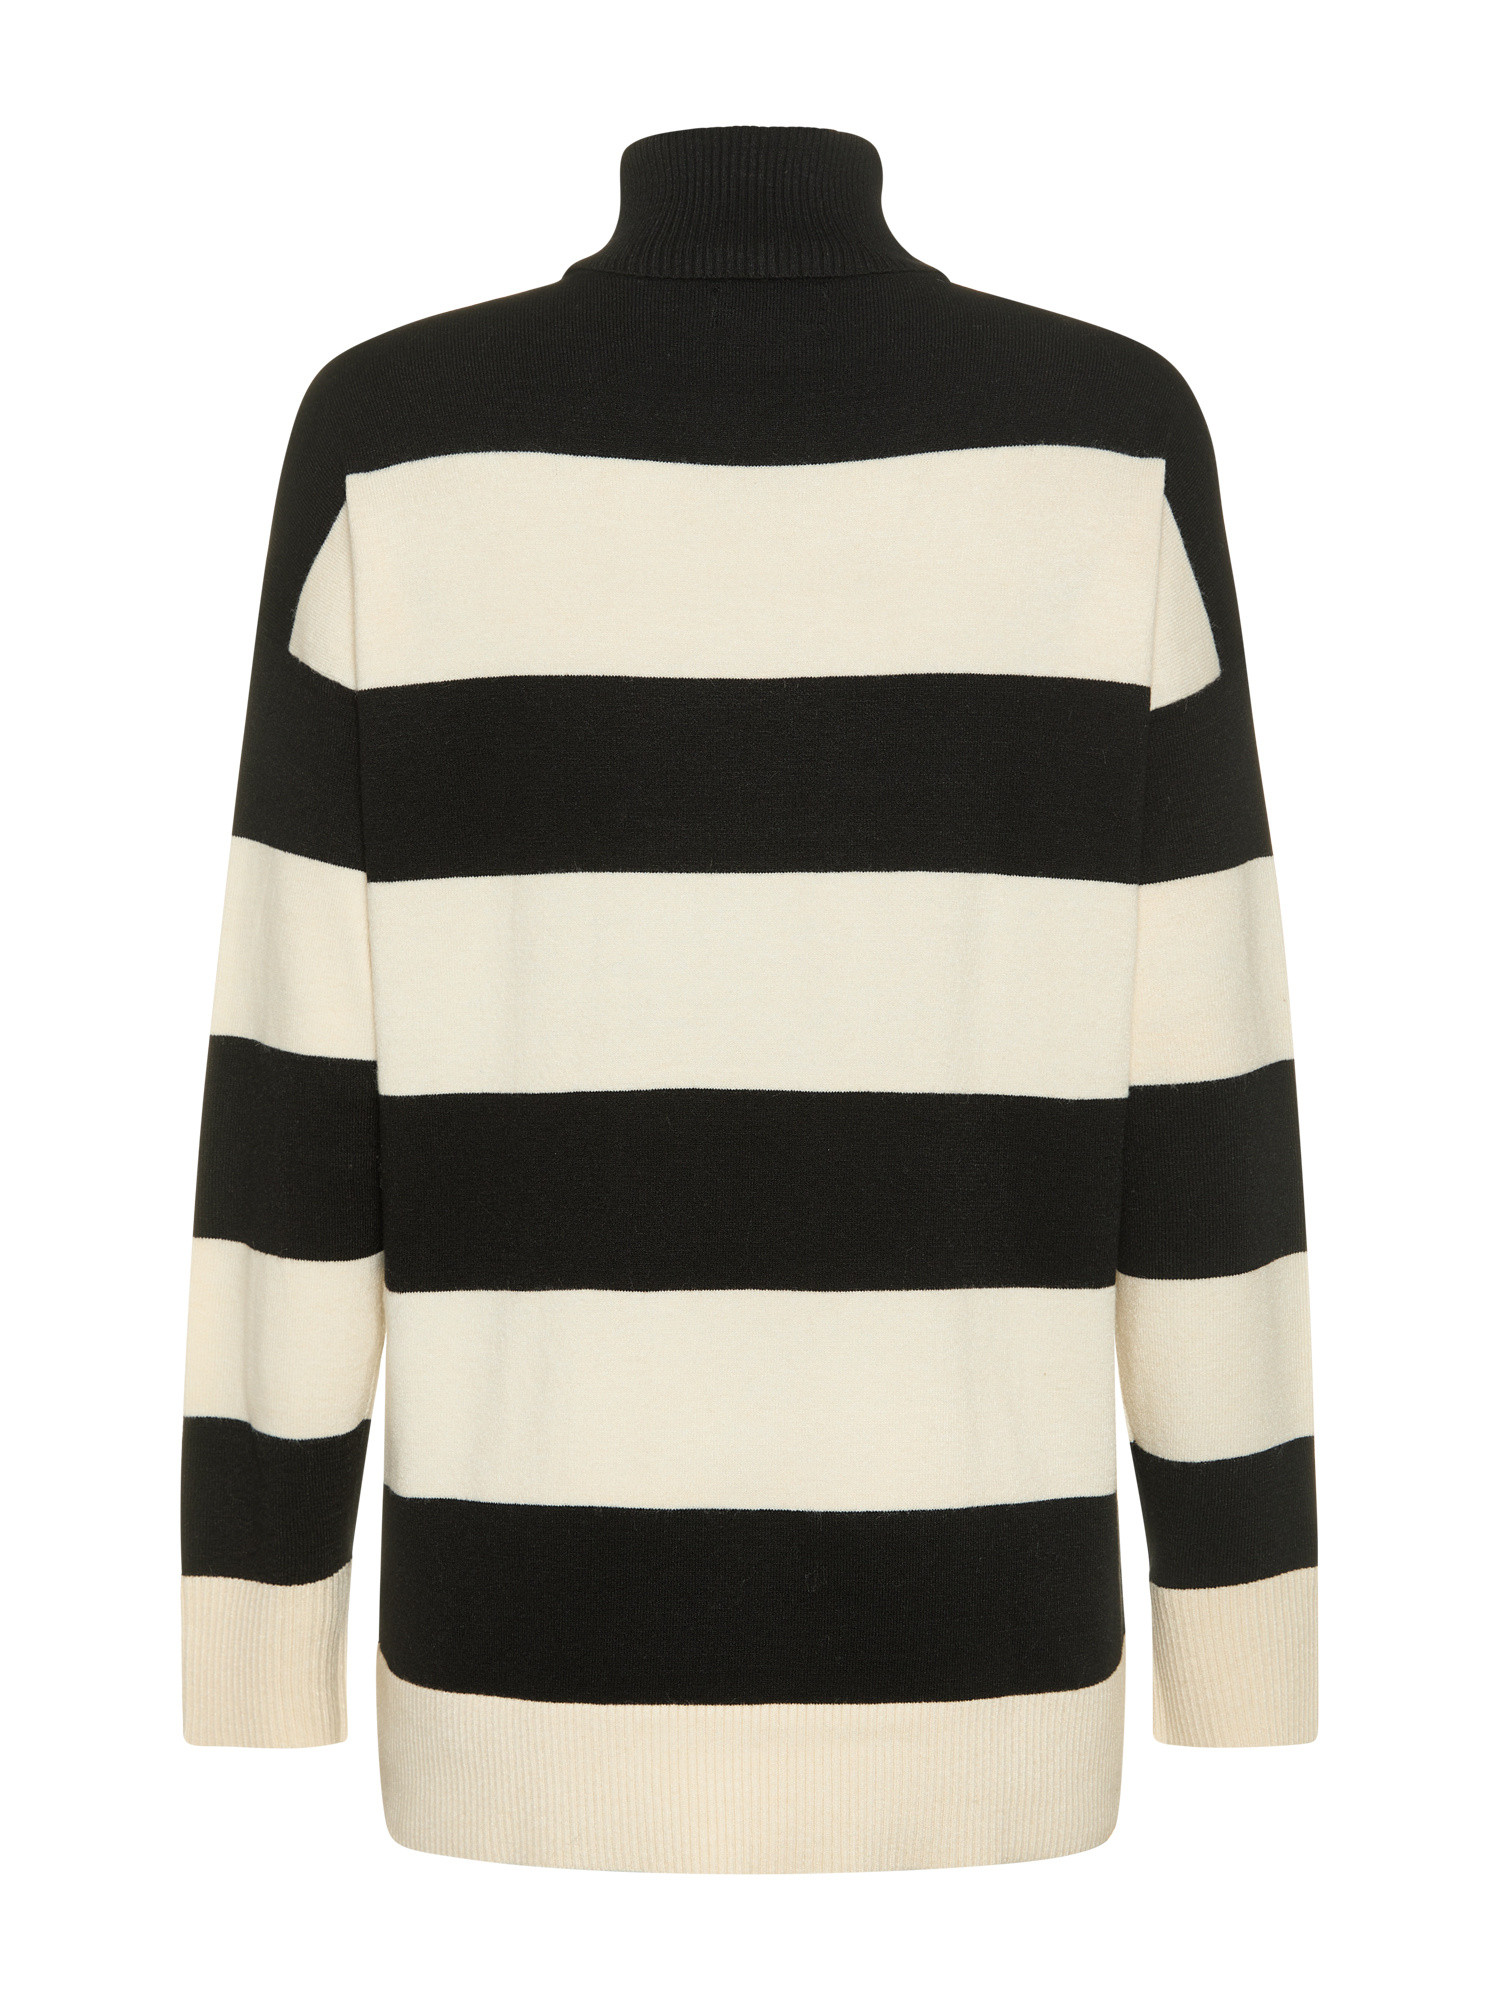 Only - Striped knit turtleneck, Black, large image number 1